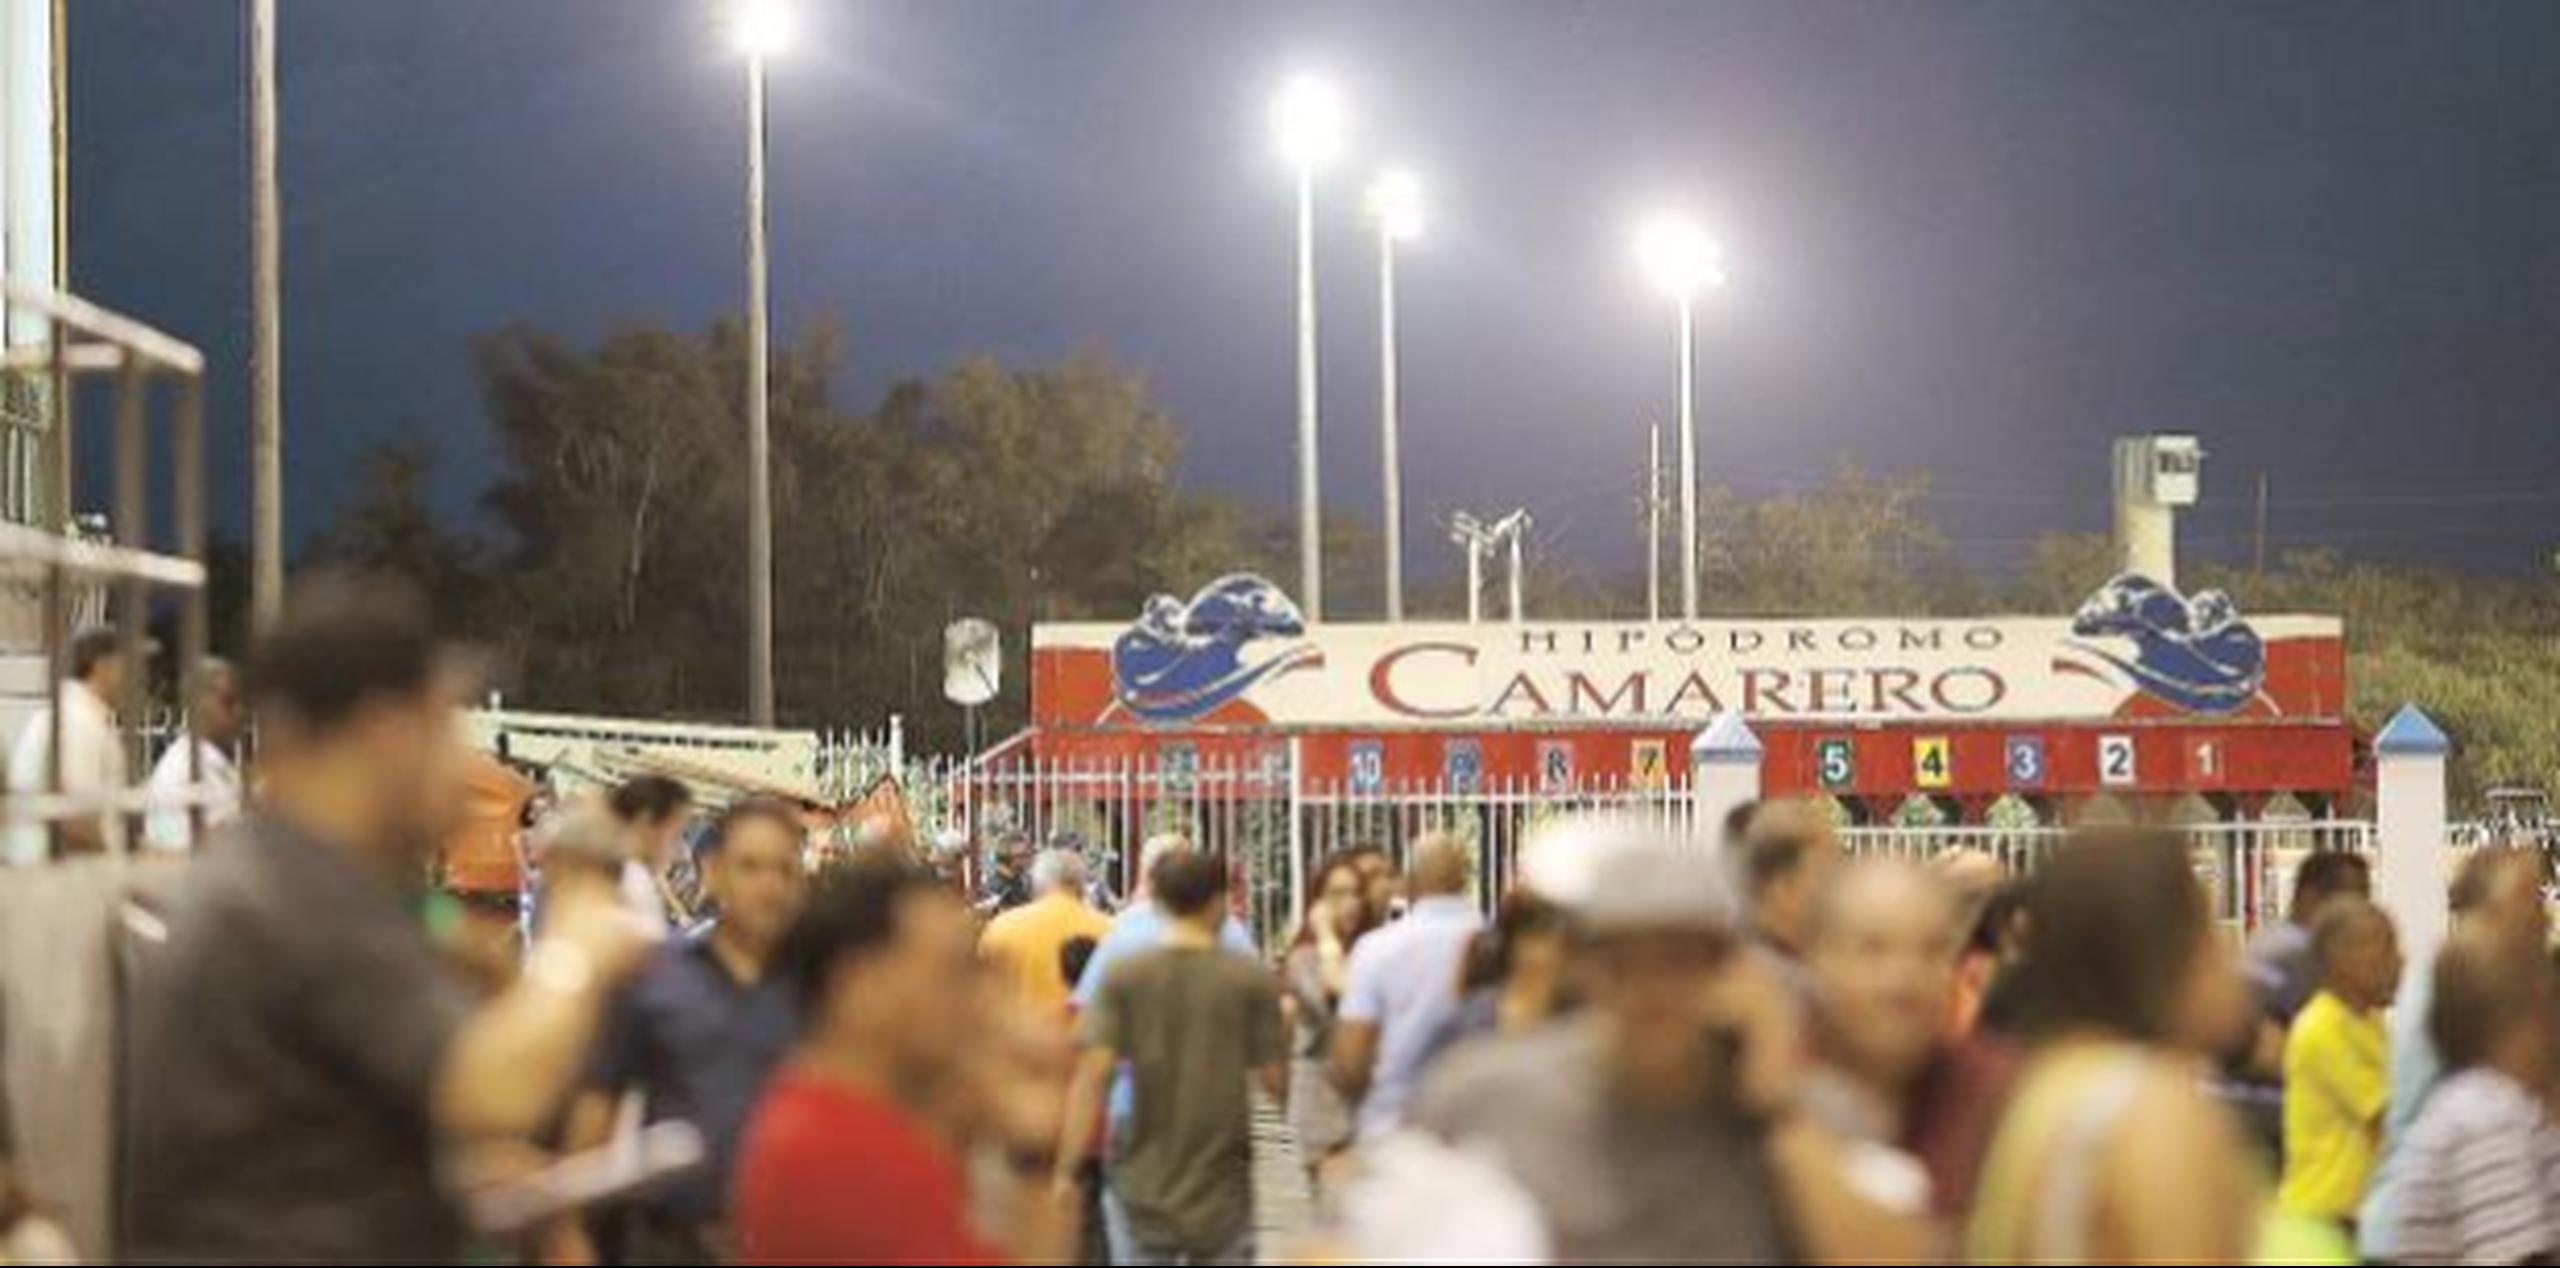 El fallo judicial propició que se reanuden las carreras en el hipódromo Camarero. (Archivo)